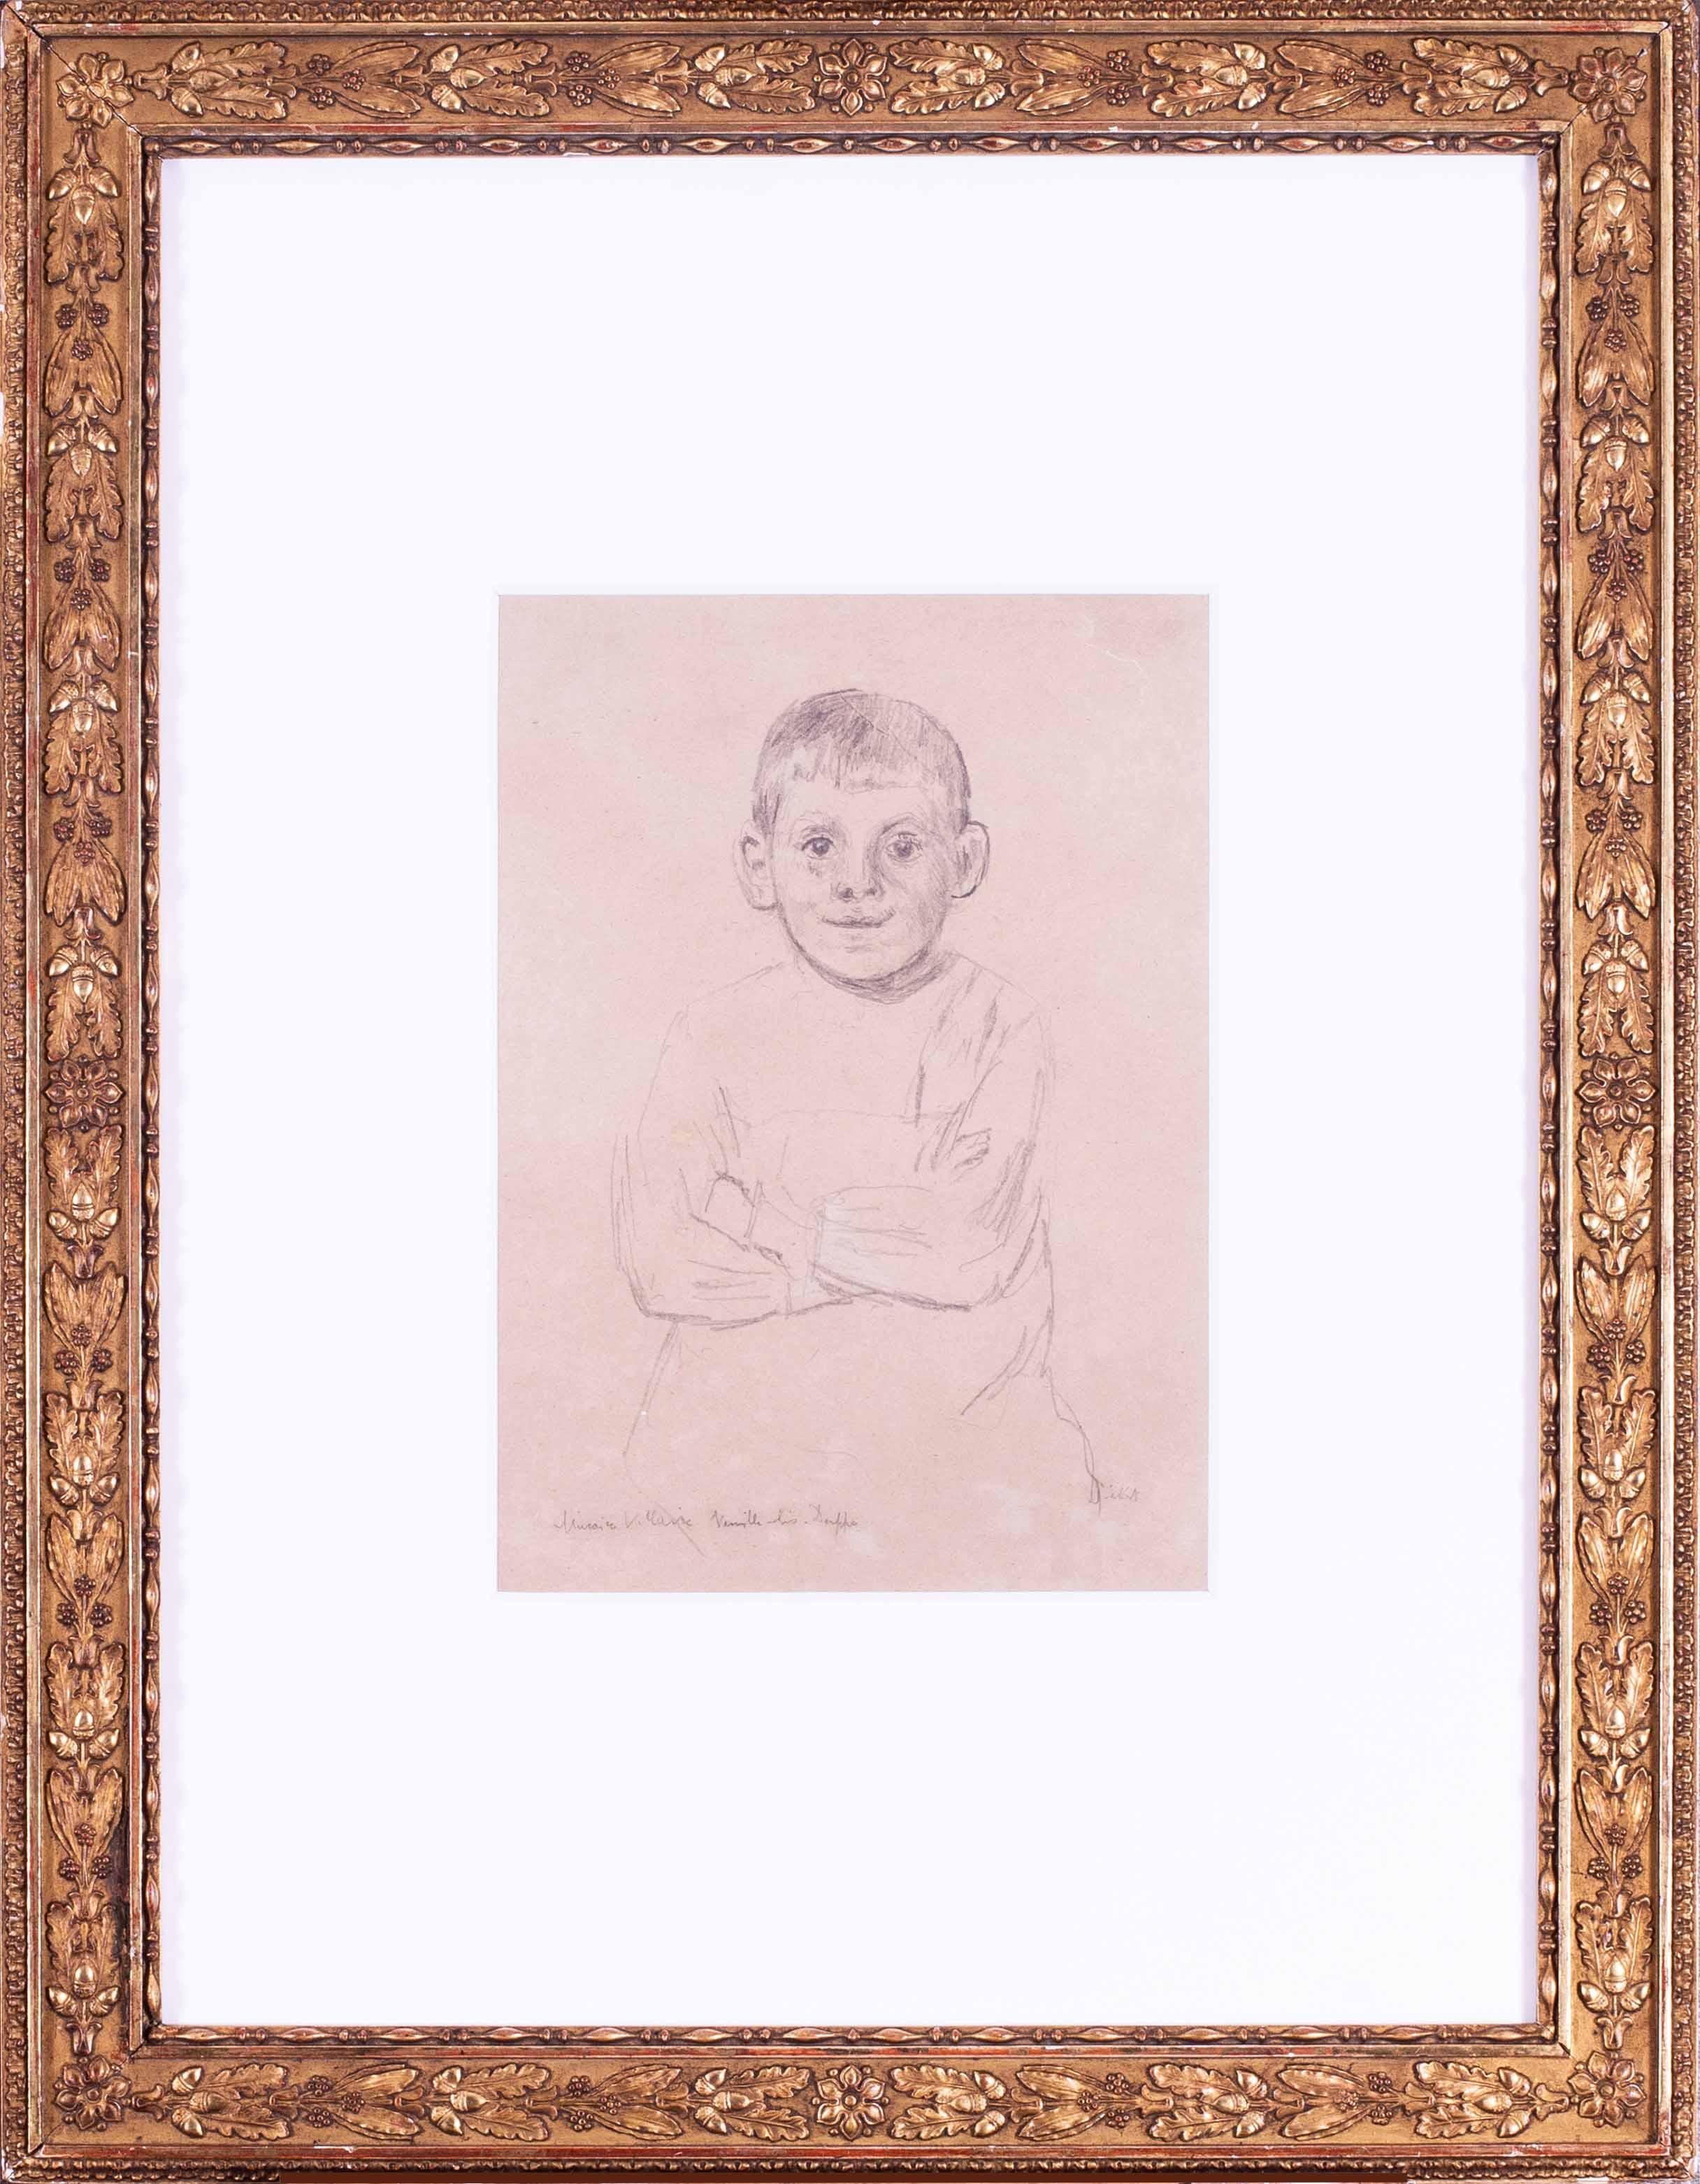 Sickert pencil portrait drawing of Maurice Villain in Dieppe, 1901, British